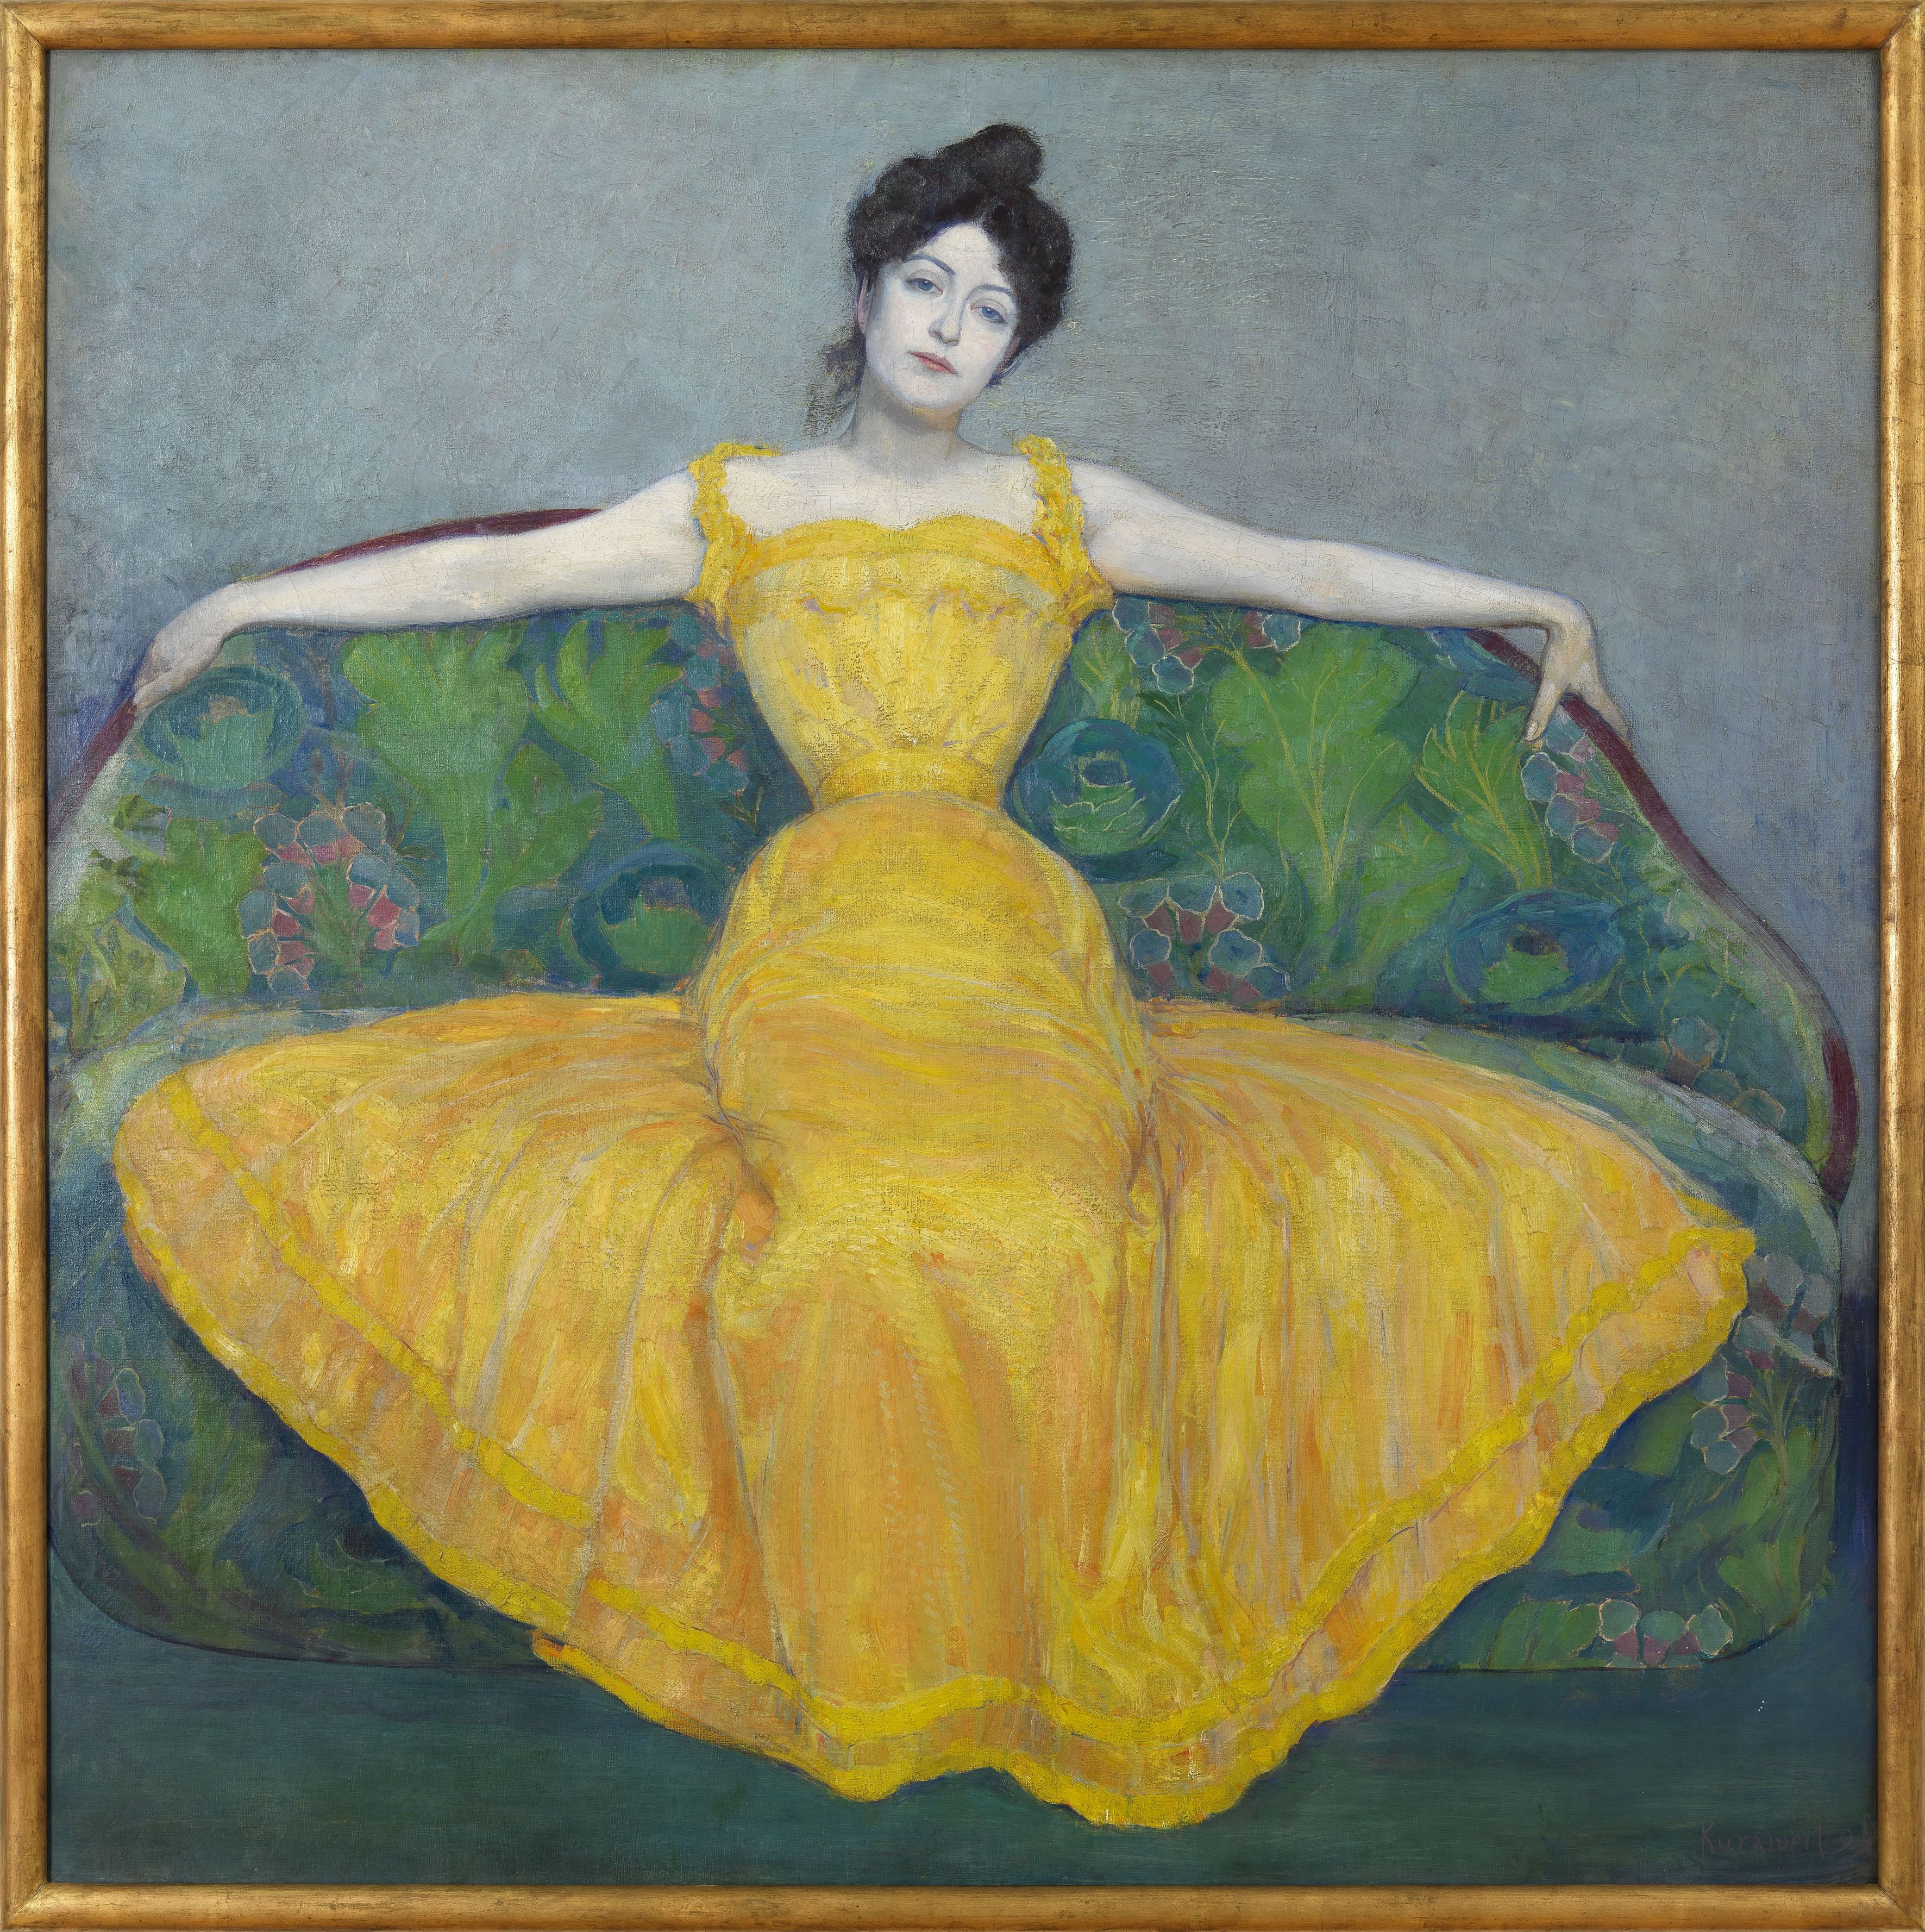 Max Kurzweil: Woman in a Yellow Dress